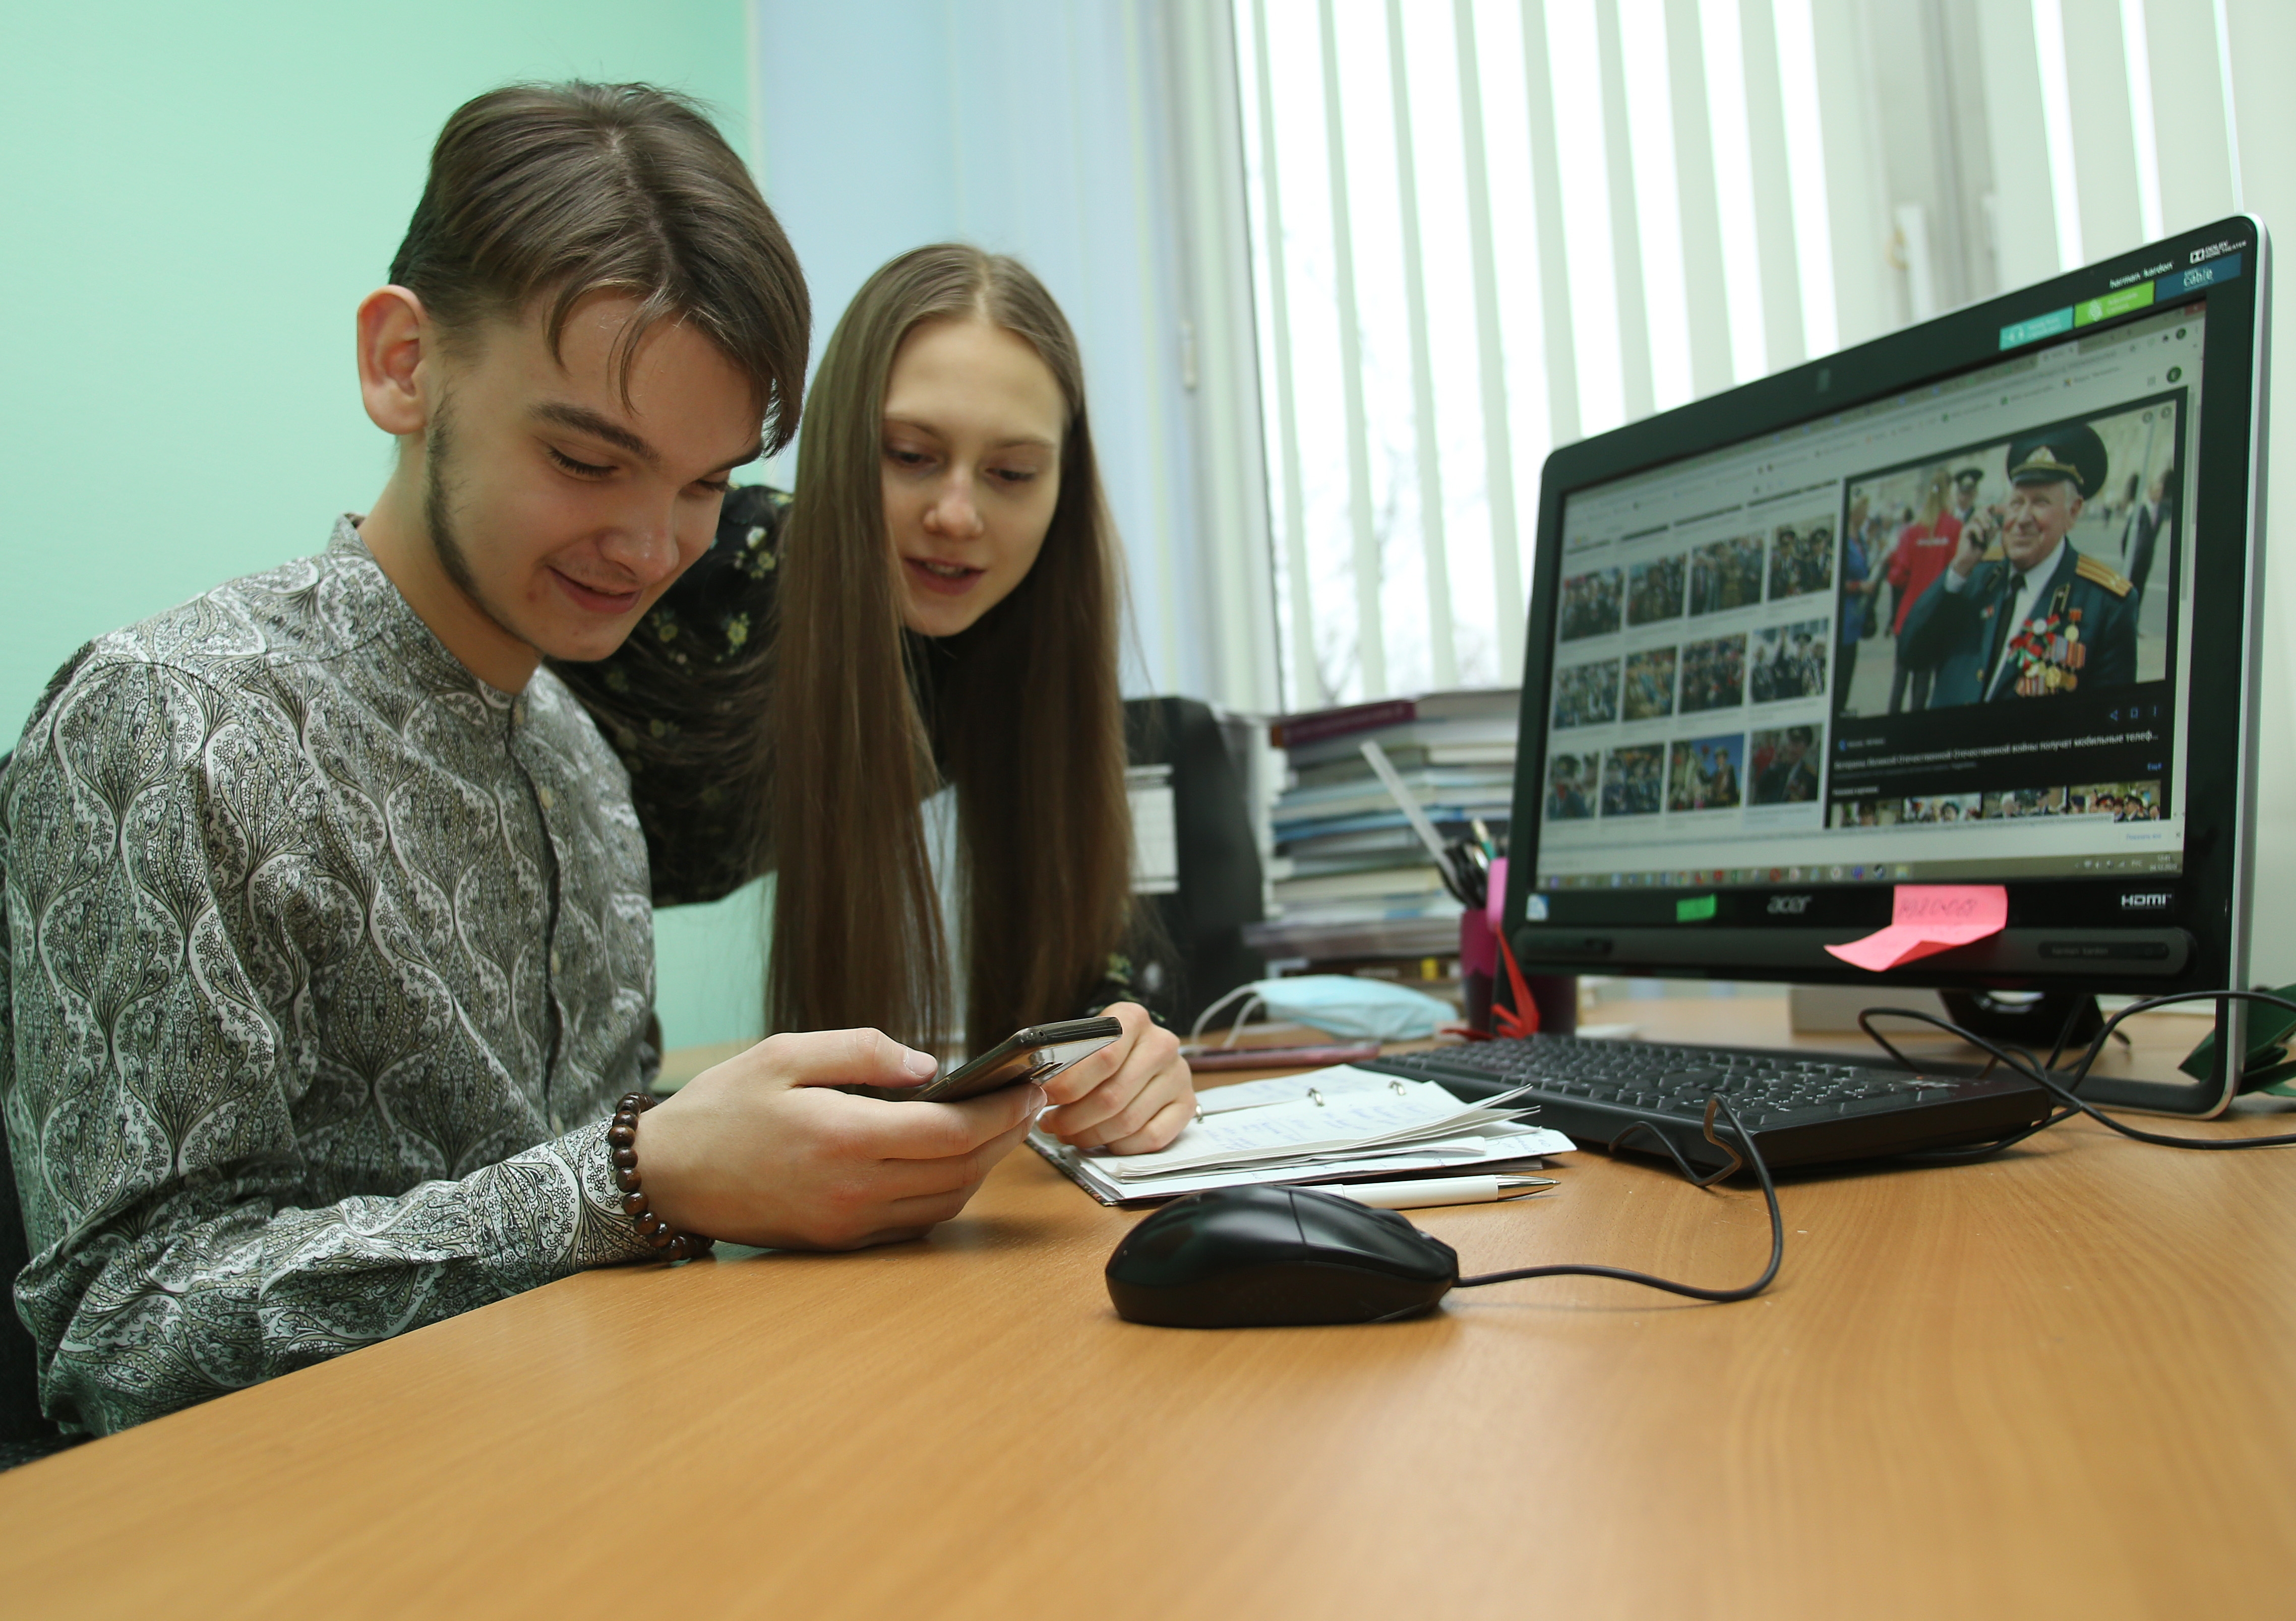 Представители Дворца культуры Щербинки подготовили онлайн-проект. Фото: Наталия Нечаева, «Вечерняя Москва»